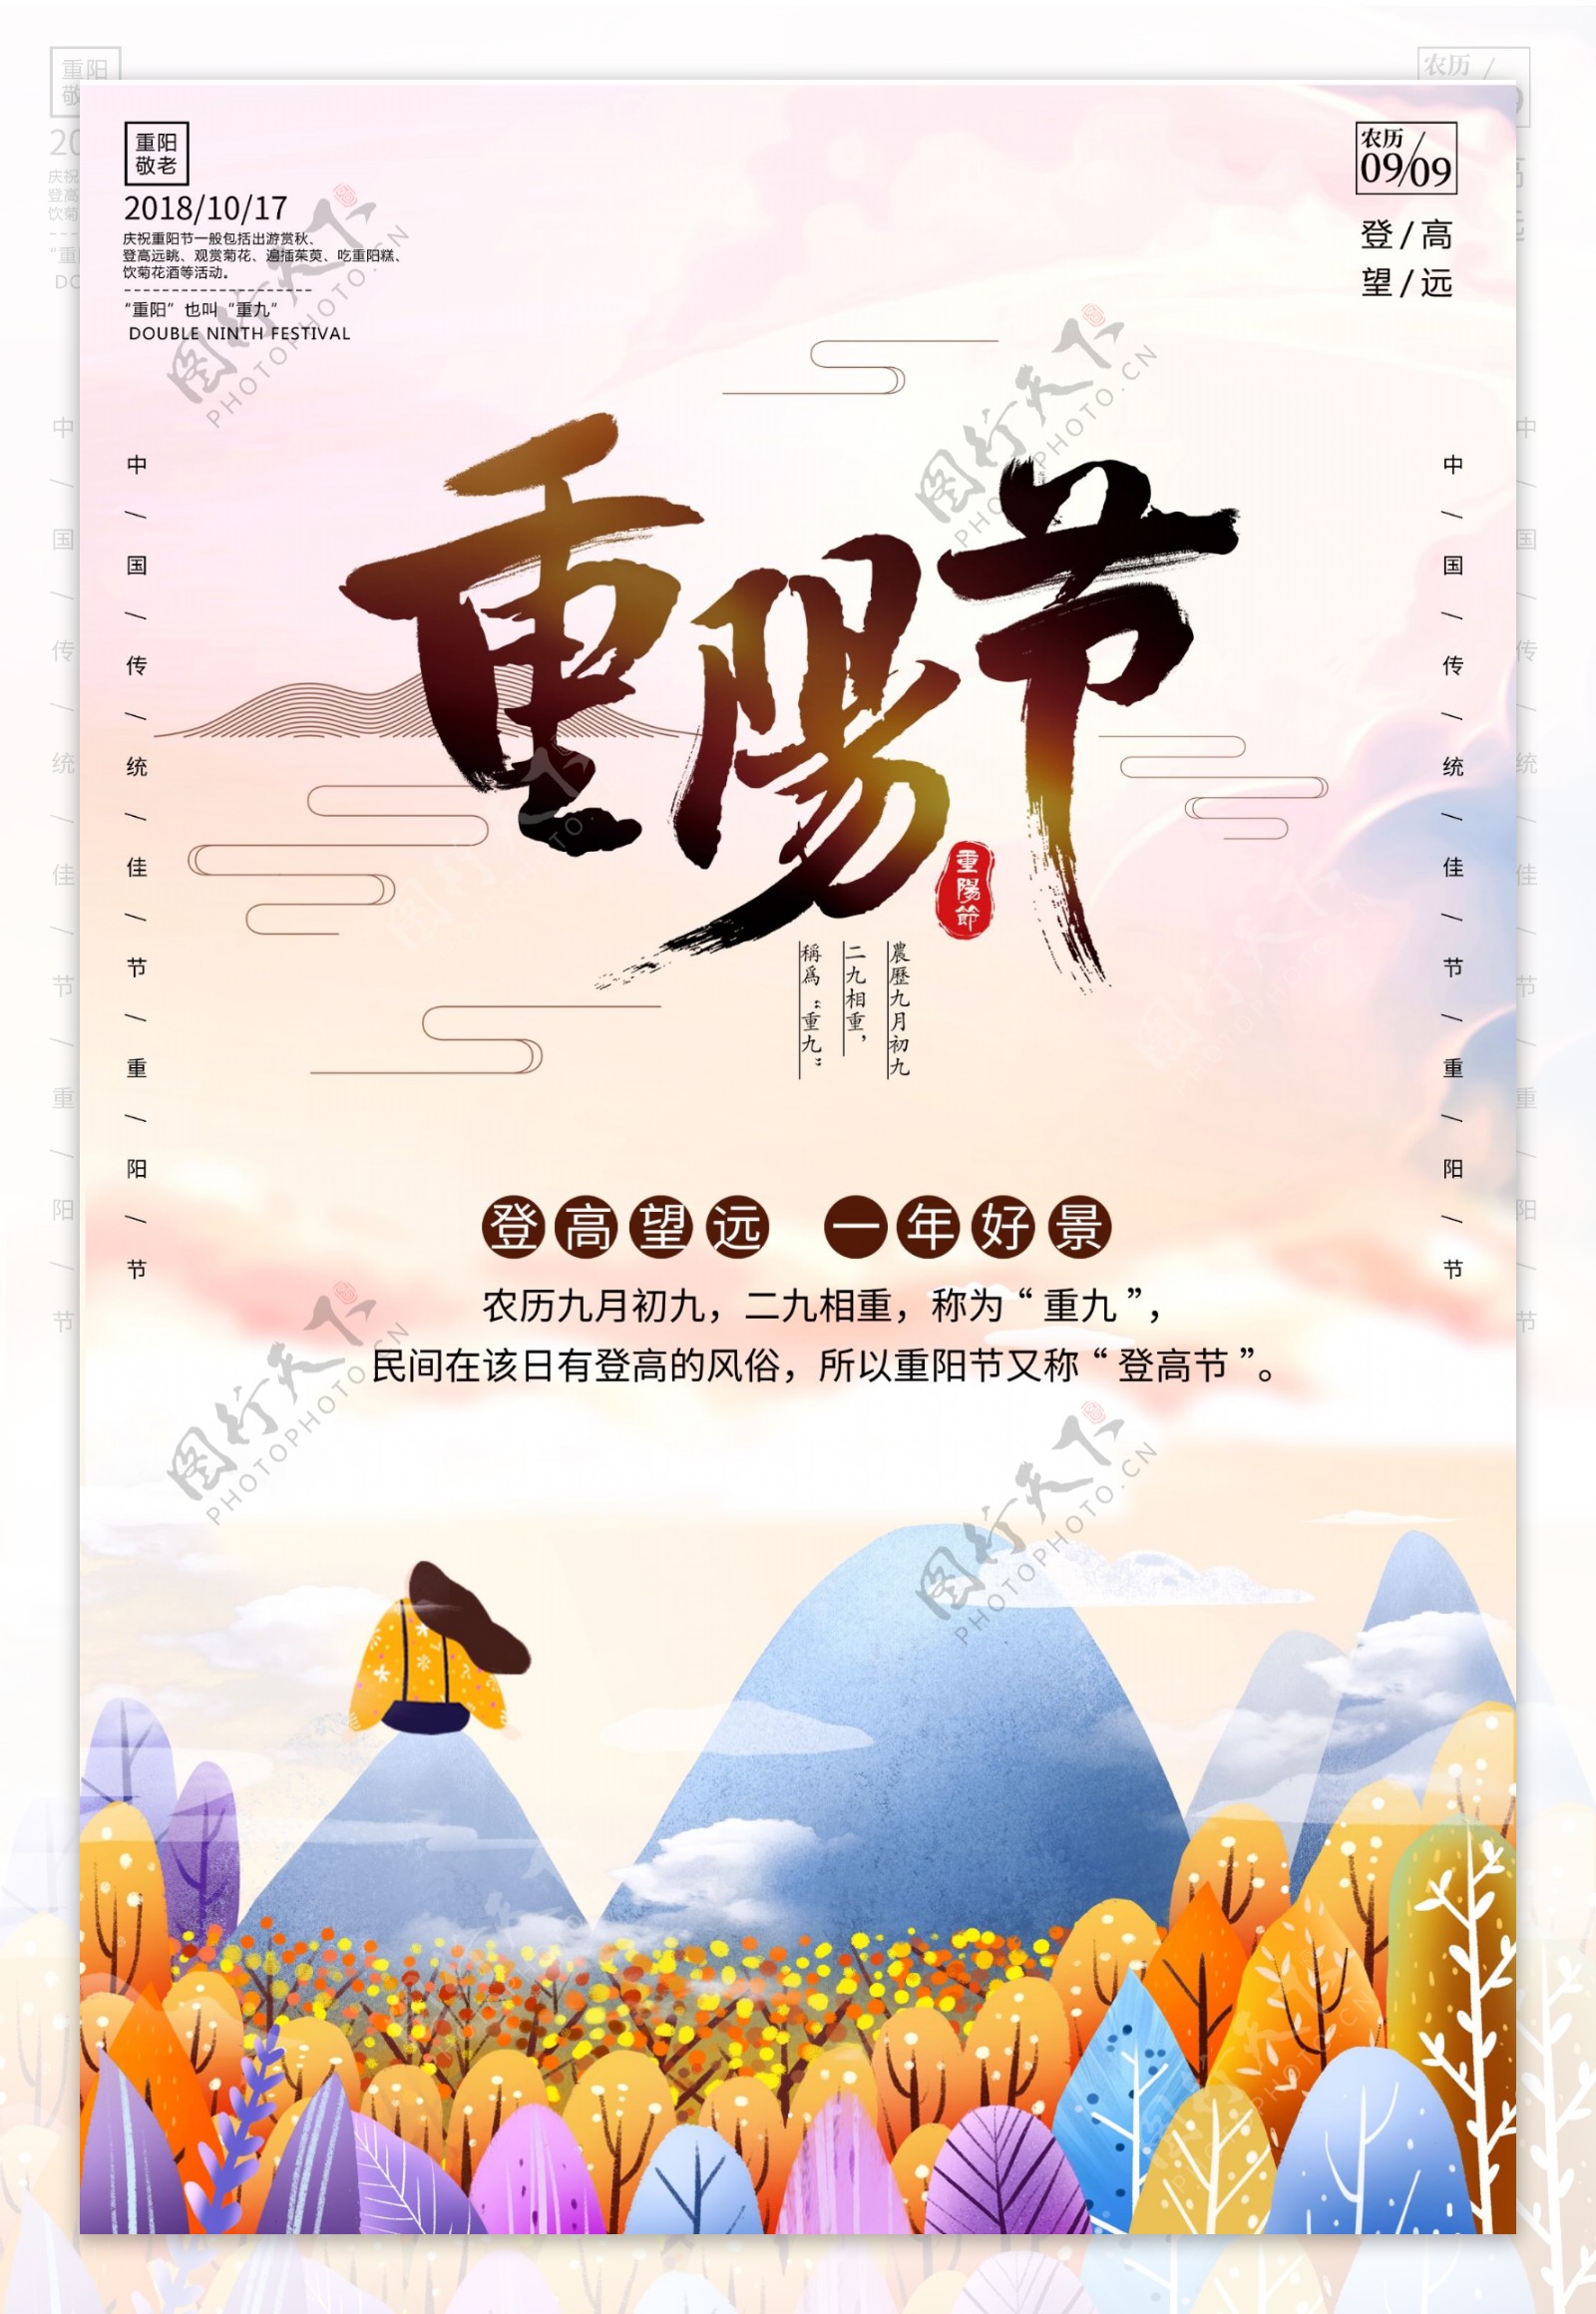 重阳节节日宣传海报模板